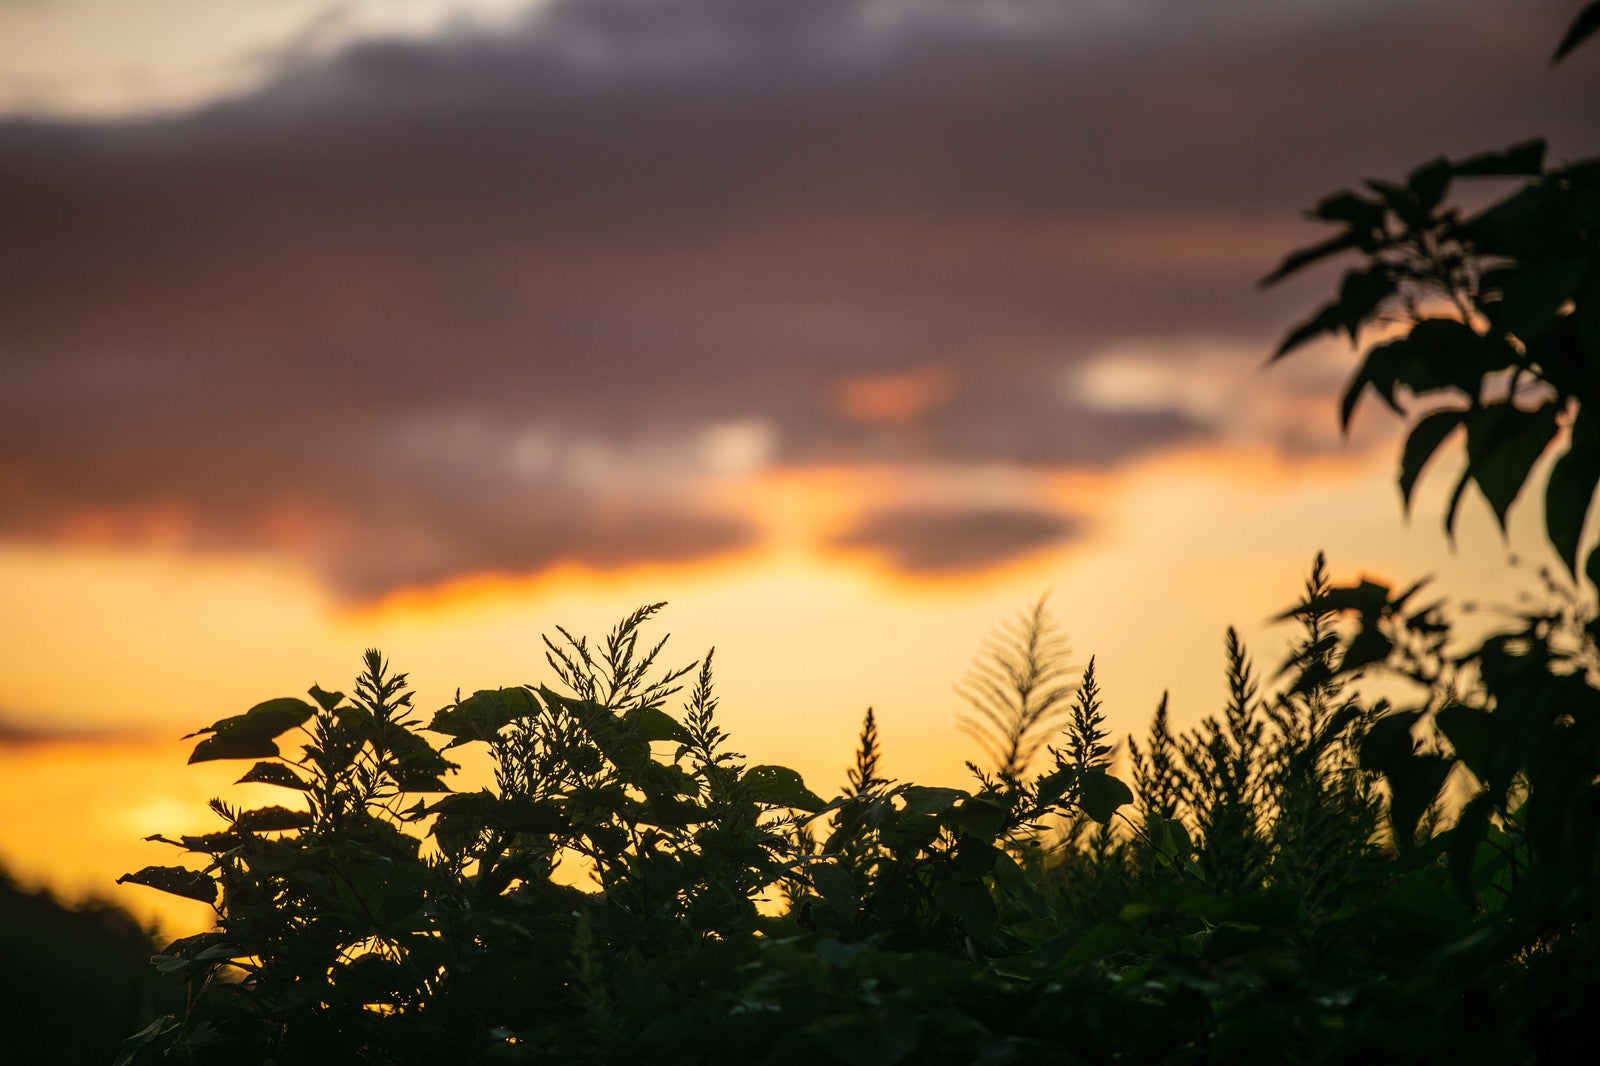 「夕暮れ空と植物のシルエット」の写真